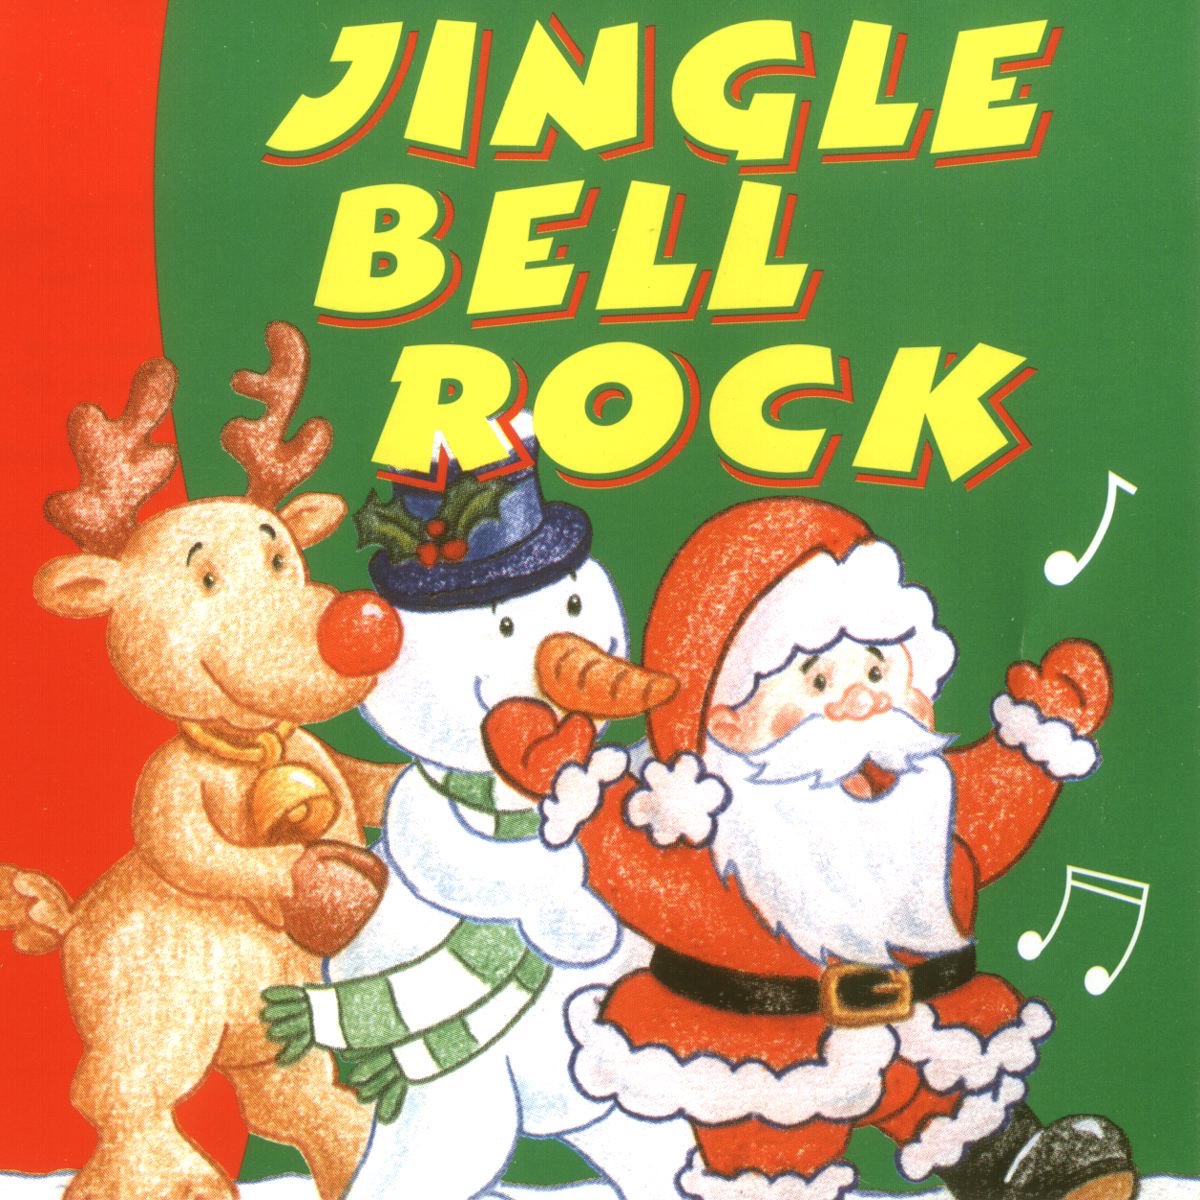 Jingle Bell Rock - Single - Album by La Guardia - Apple Music